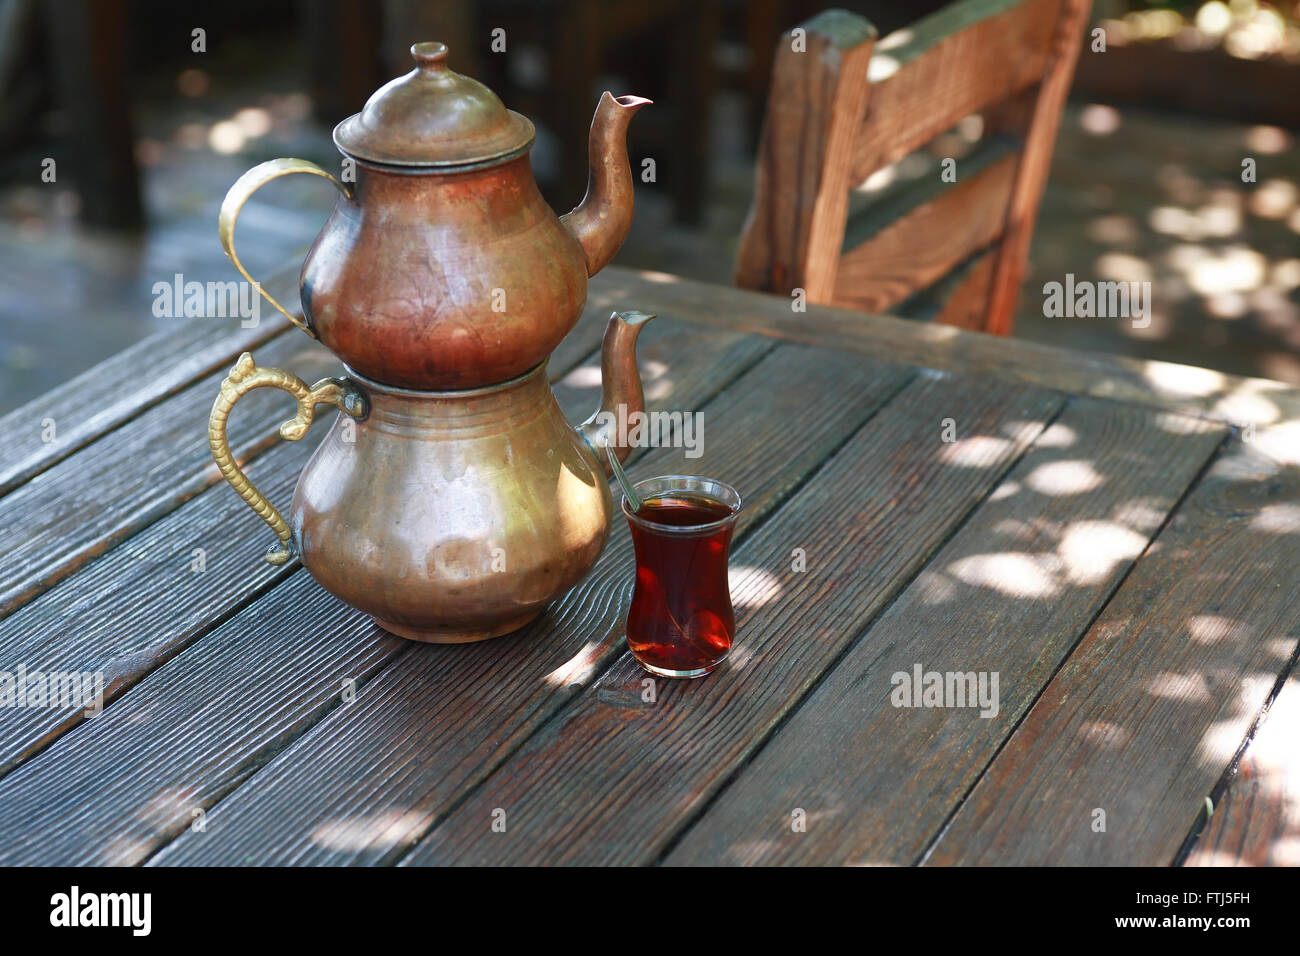 Teiera turca immagini e fotografie stock ad alta risoluzione - Alamy